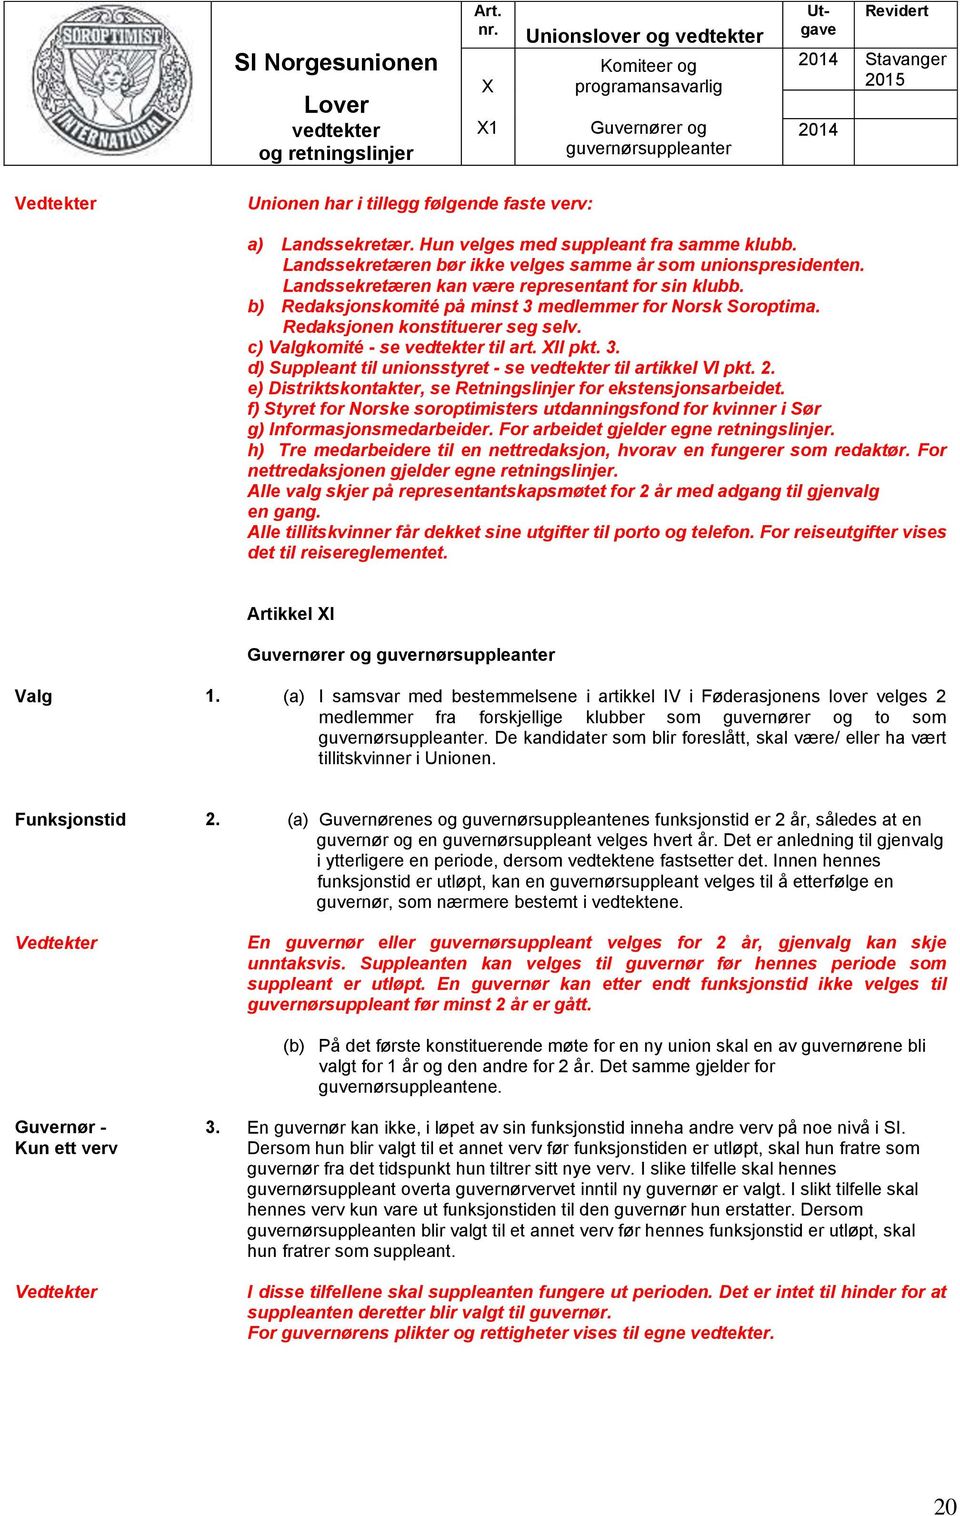 b) Redaksjonskomité på minst 3 medlemmer for Norsk Soroptima. Redaksjonen konstituerer seg selv. c) Valgkomité - se til art. XII pkt. 3. d) Suppleant til unionsstyret - se til artikkel VI pkt. 2.